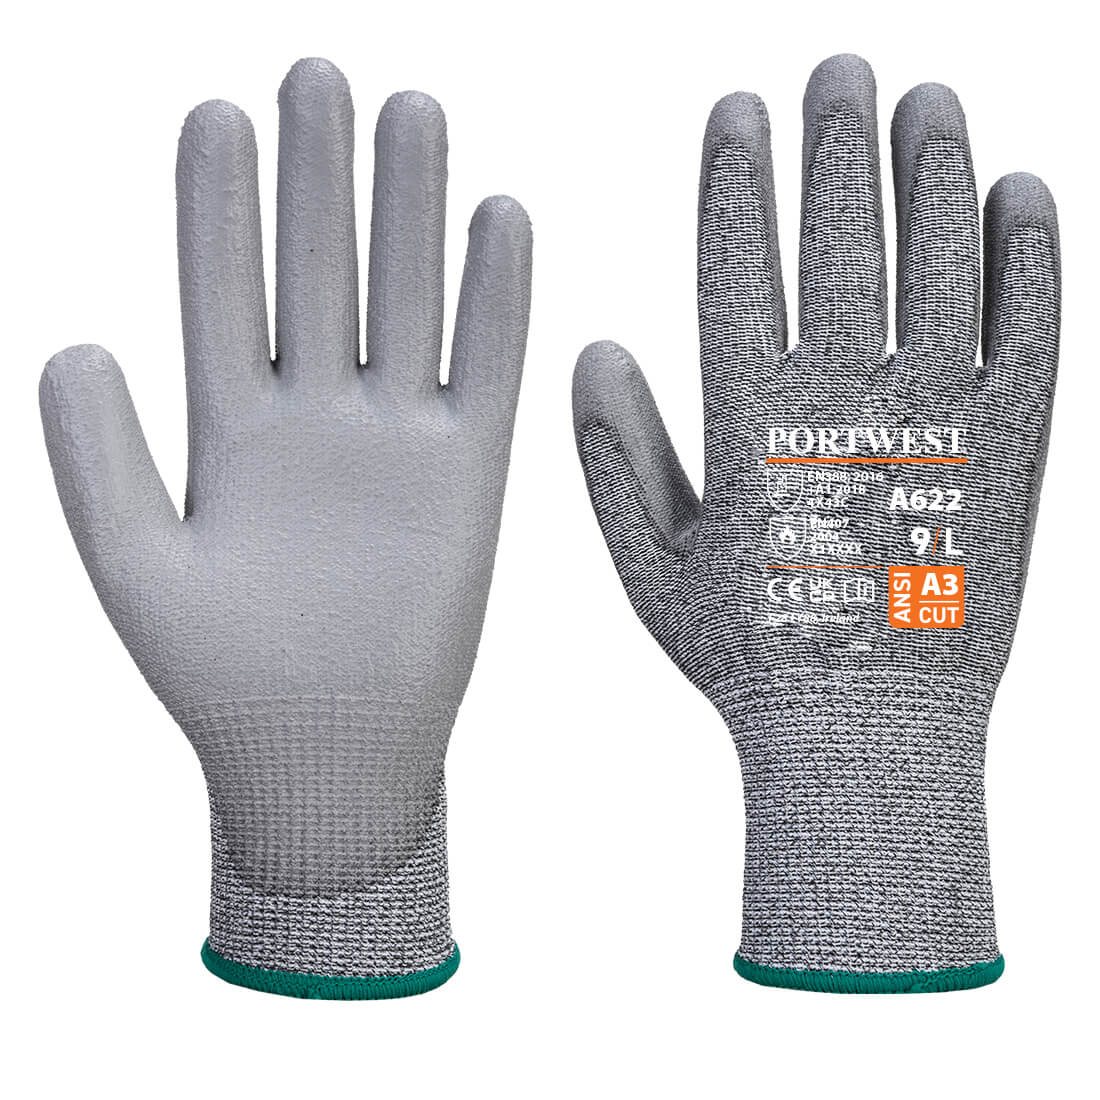 Portwest A622 - MR Cut PU Palm Glove - Grey - Small (Size 7)